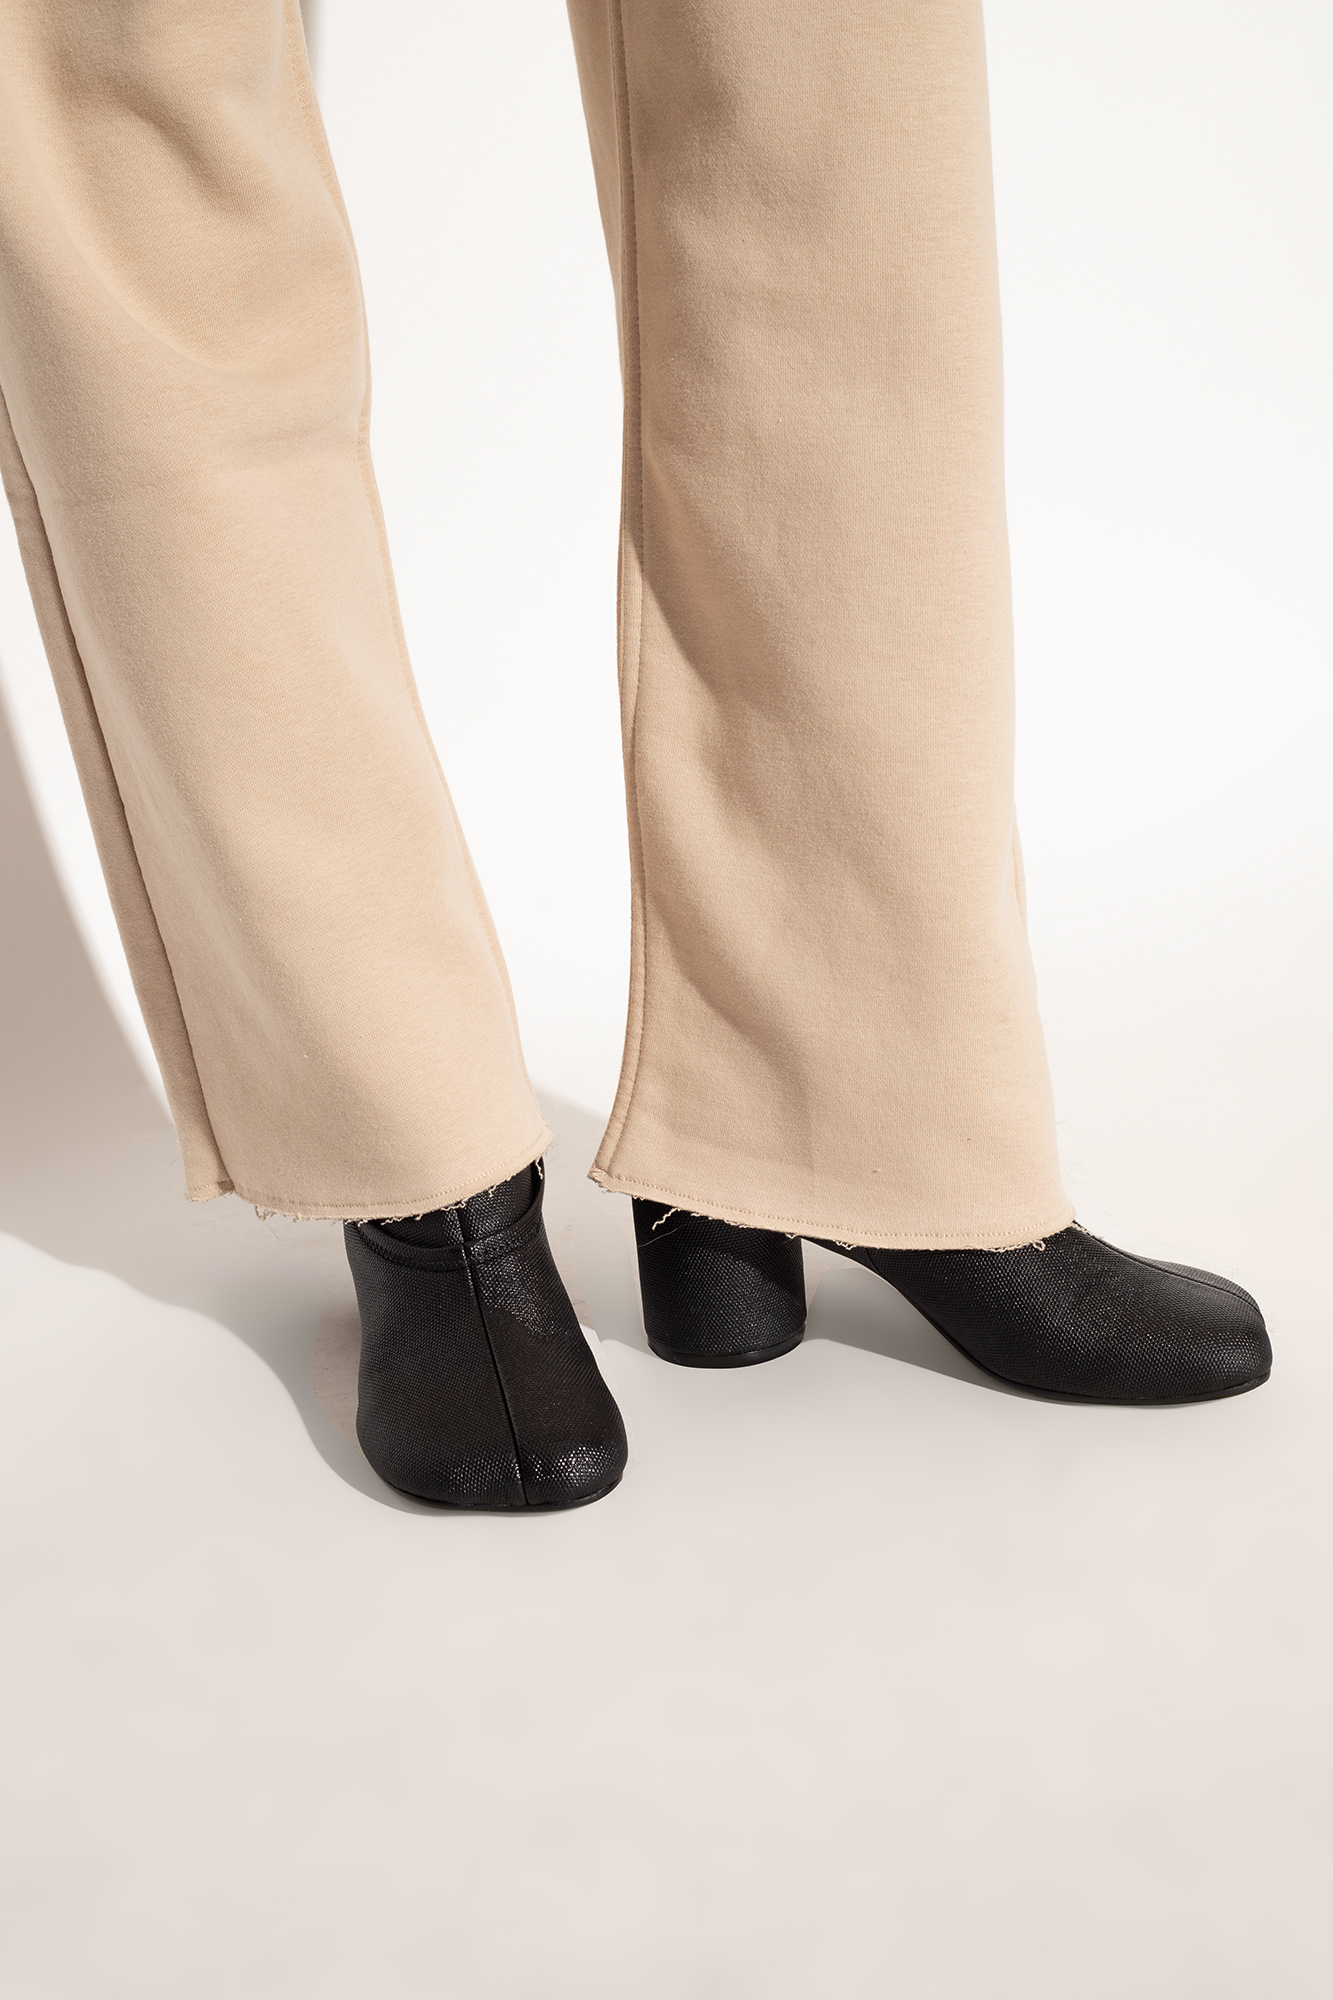 Black 'Anatomic' heeled ankle boots MM6 Maison Margiela - Vitkac